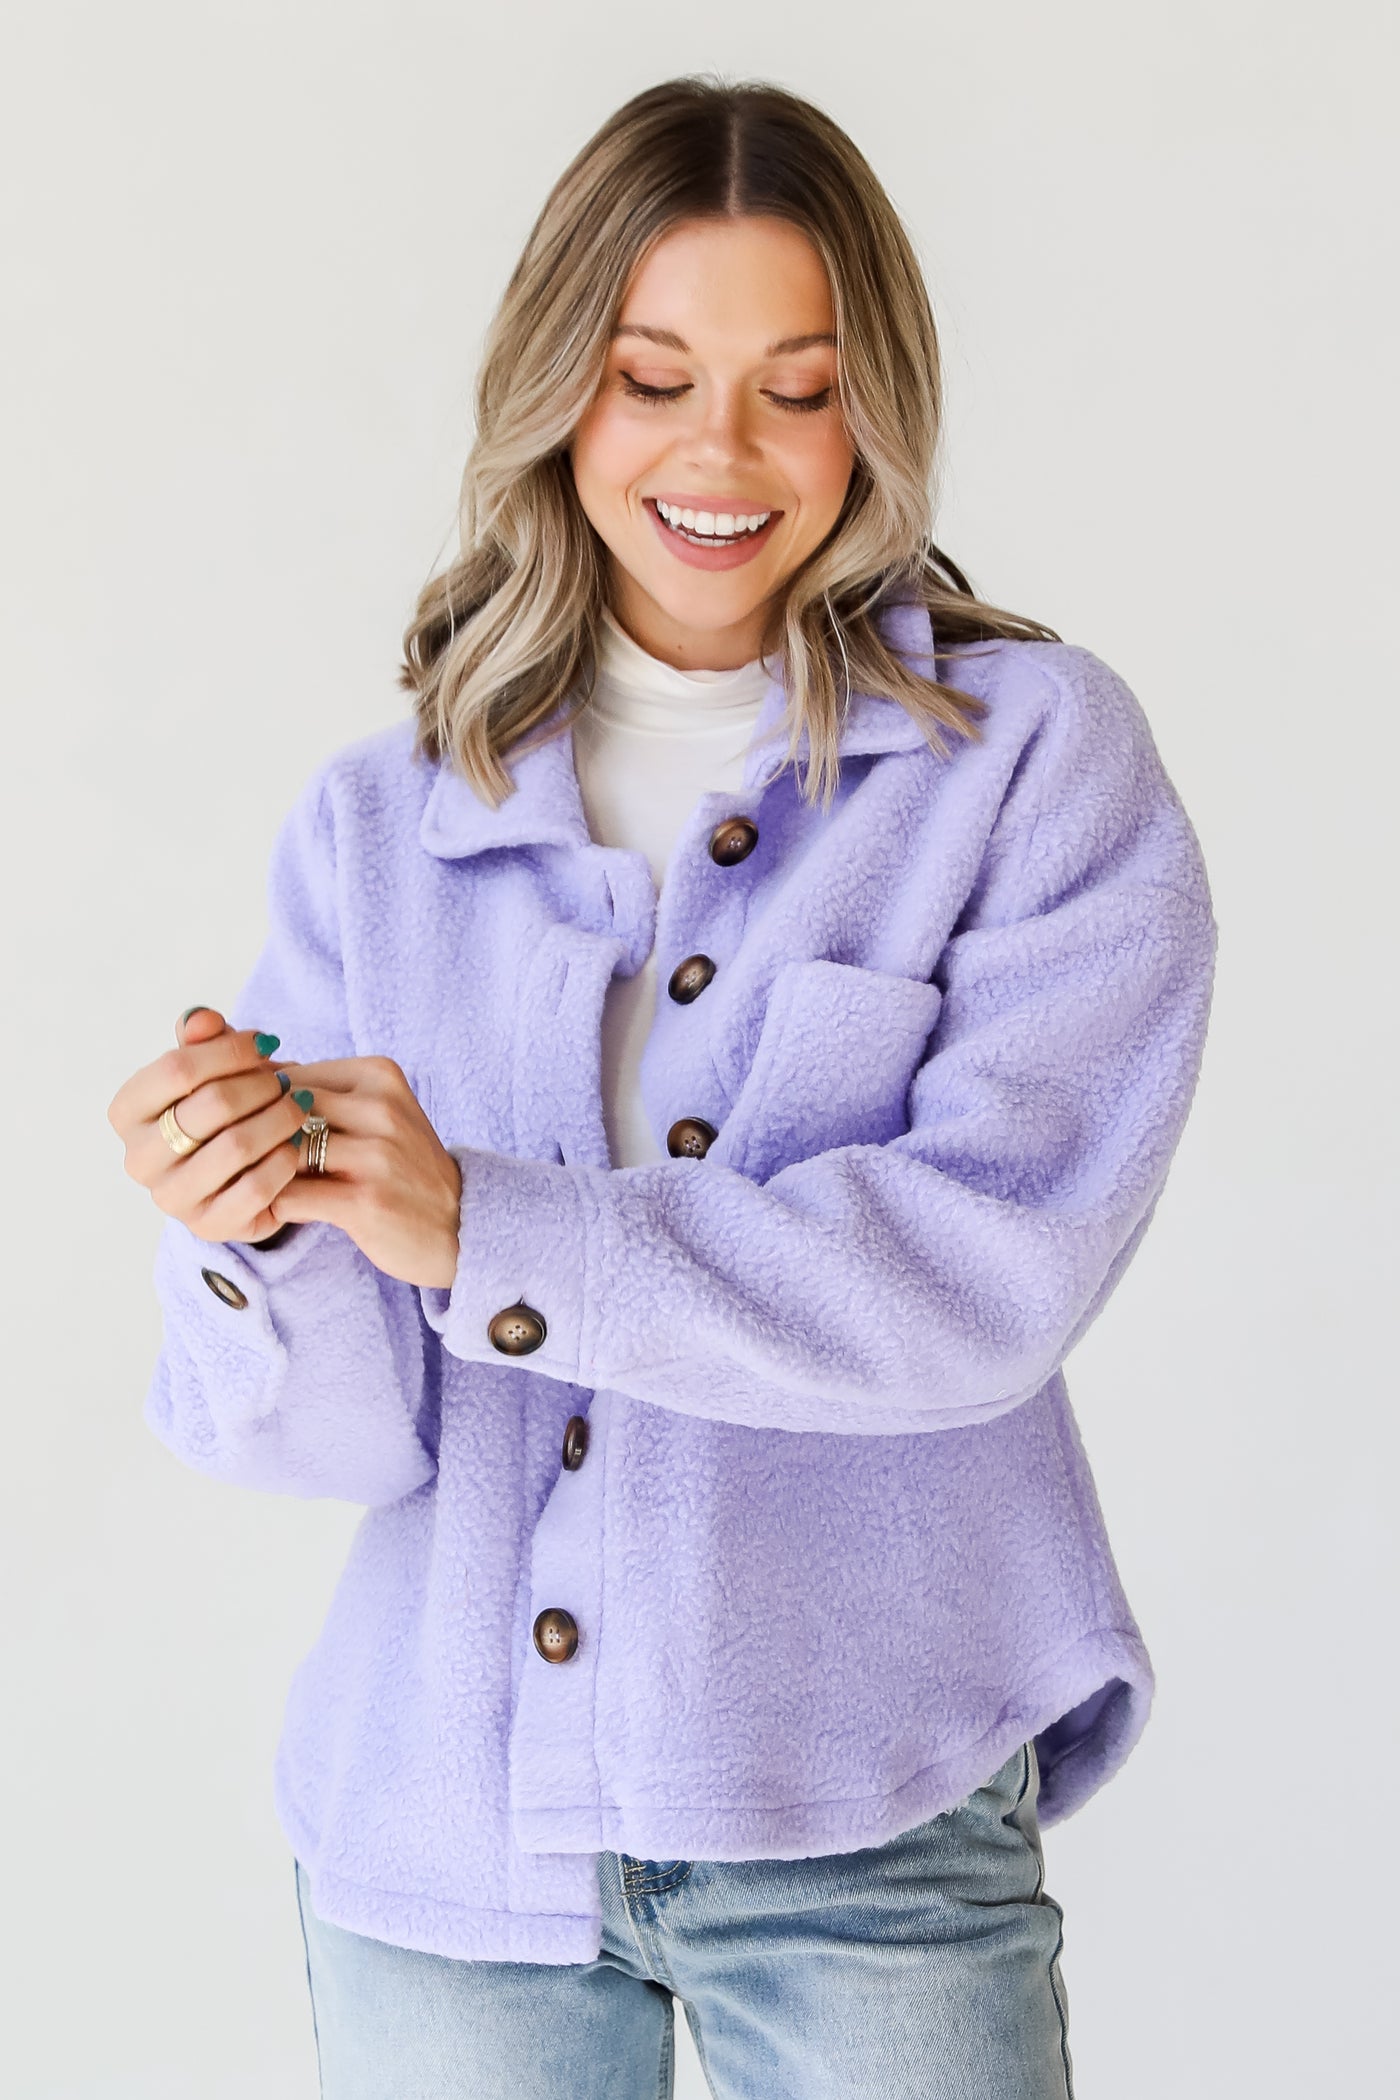 purple Sherpa Jacket on model